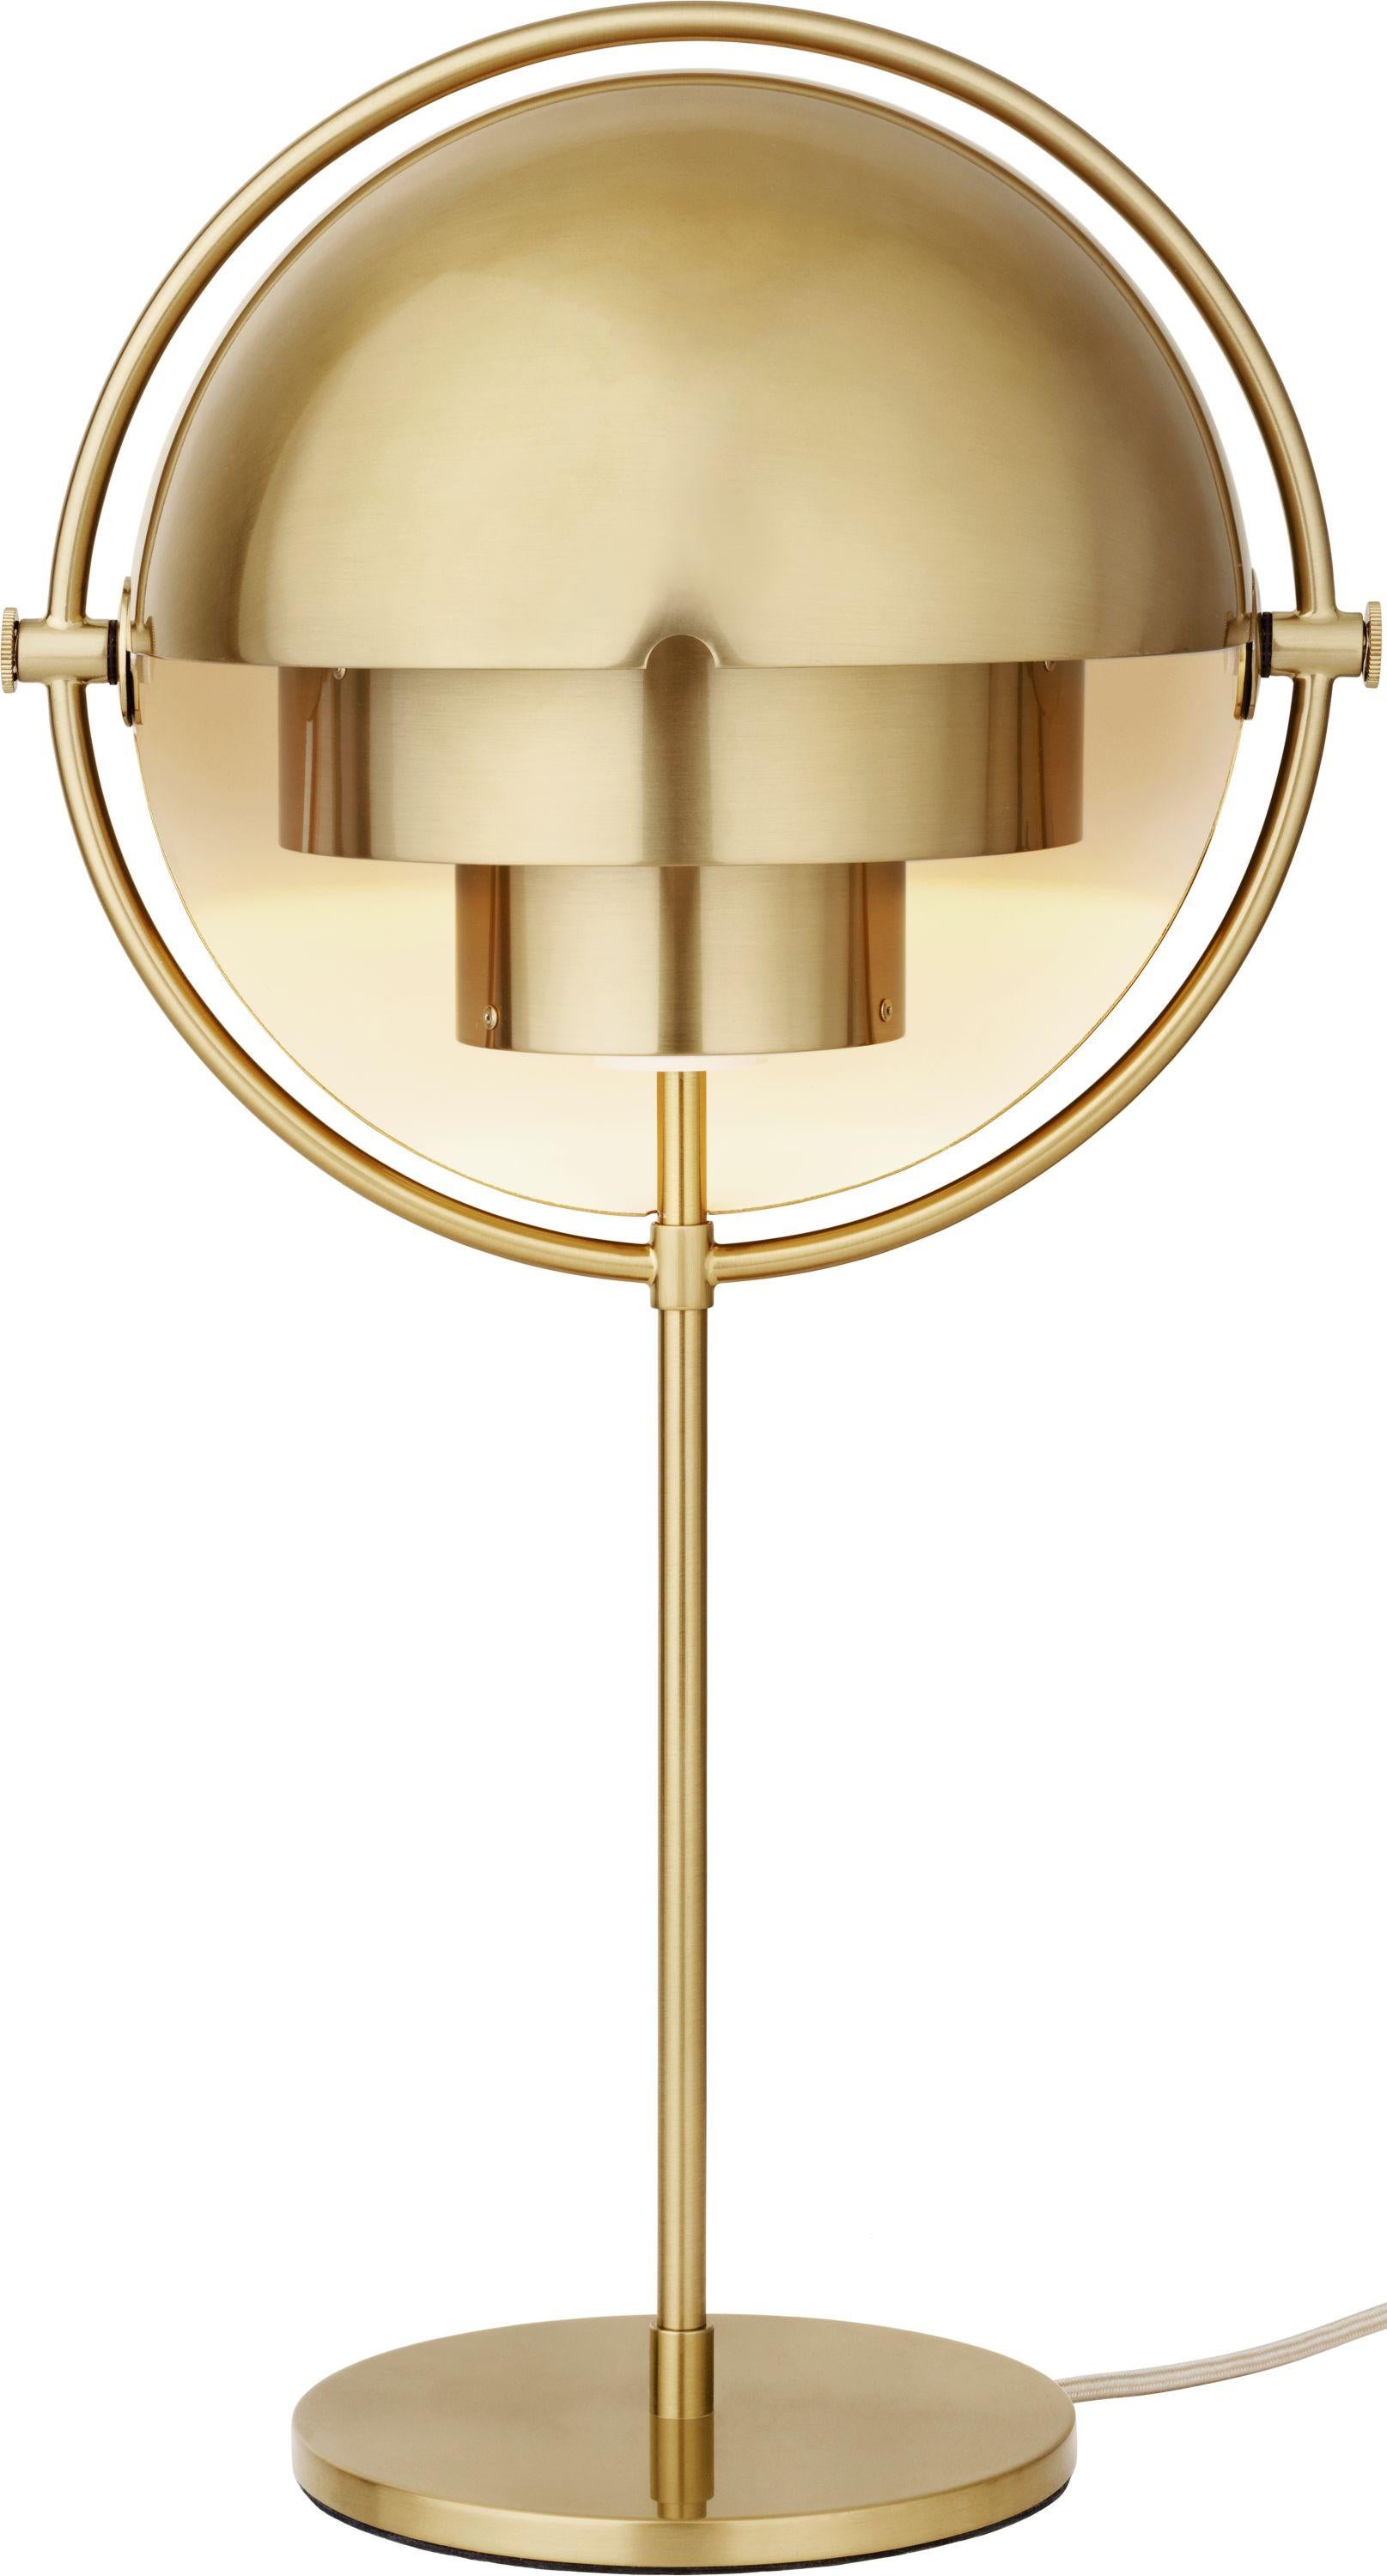 Louis Weisdorf 'Multi-Lite' Tischlampe aus Messing. Das 1972 von Weisdorf entworfene Buch ist eine autorisierte Neuauflage von GUBI aus Dänemark, die seine Arbeit mit akribischer Liebe zum Detail und mit Materialien, die den ursprünglichen